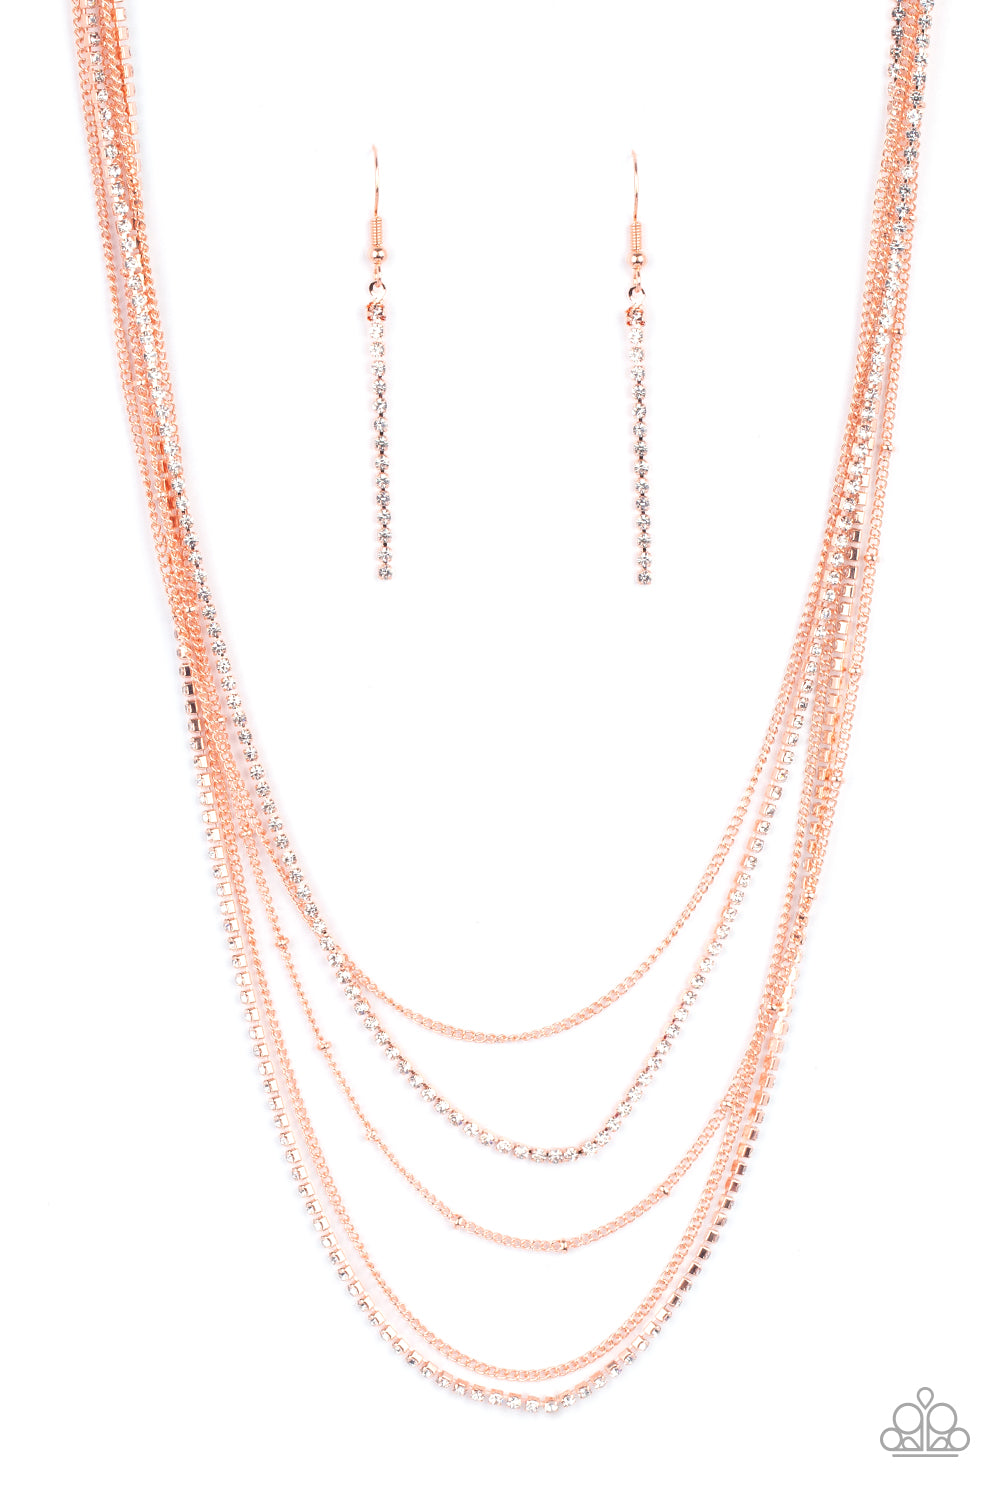 Dangerously Demure - Copper Necklace Set - Princess Glam Shop